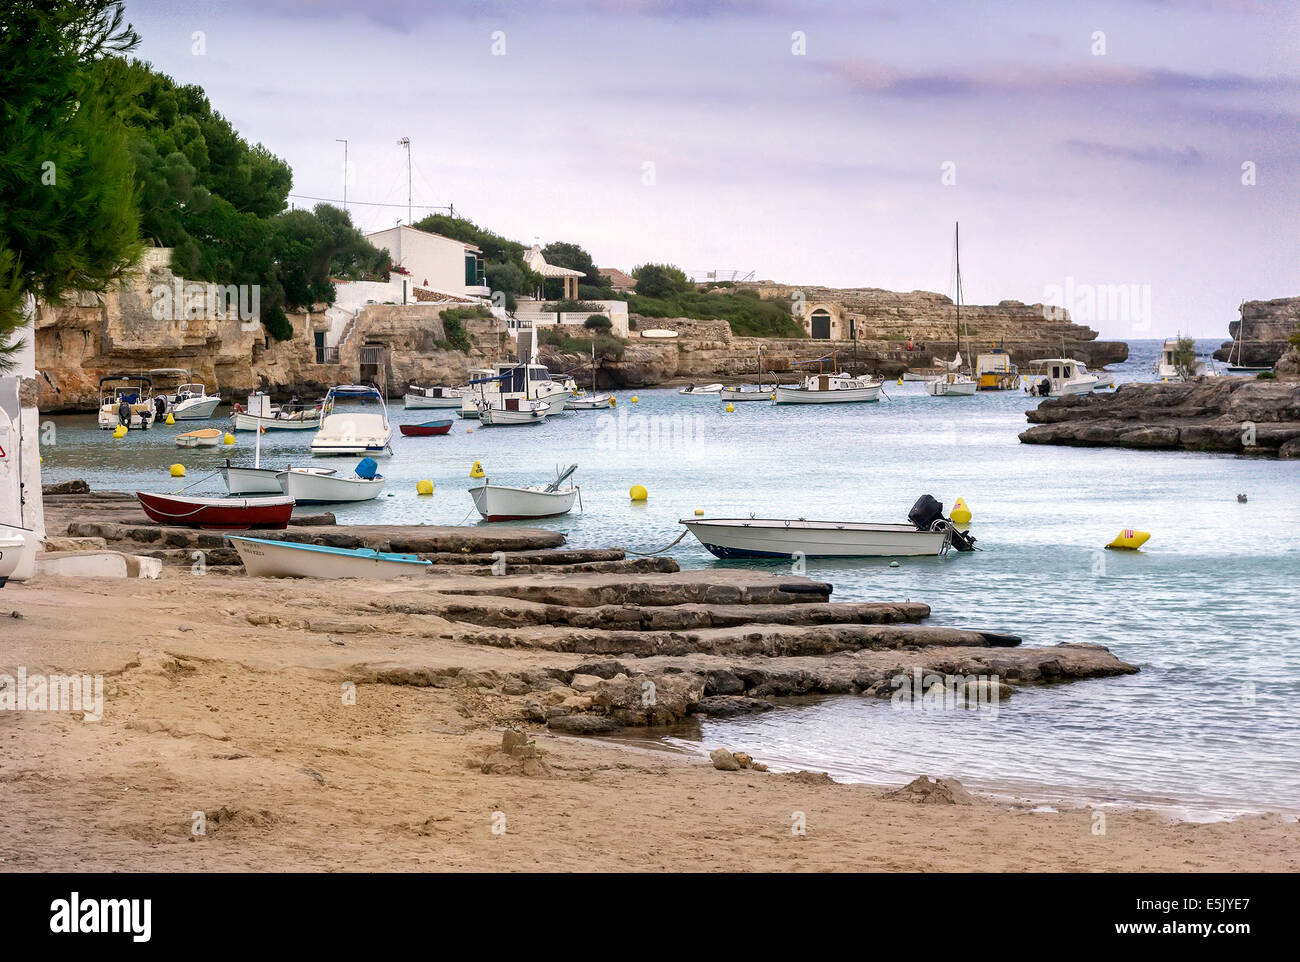 Boats on a sea loch, Menorca. Balearic Islands (Spain) Stock Photo